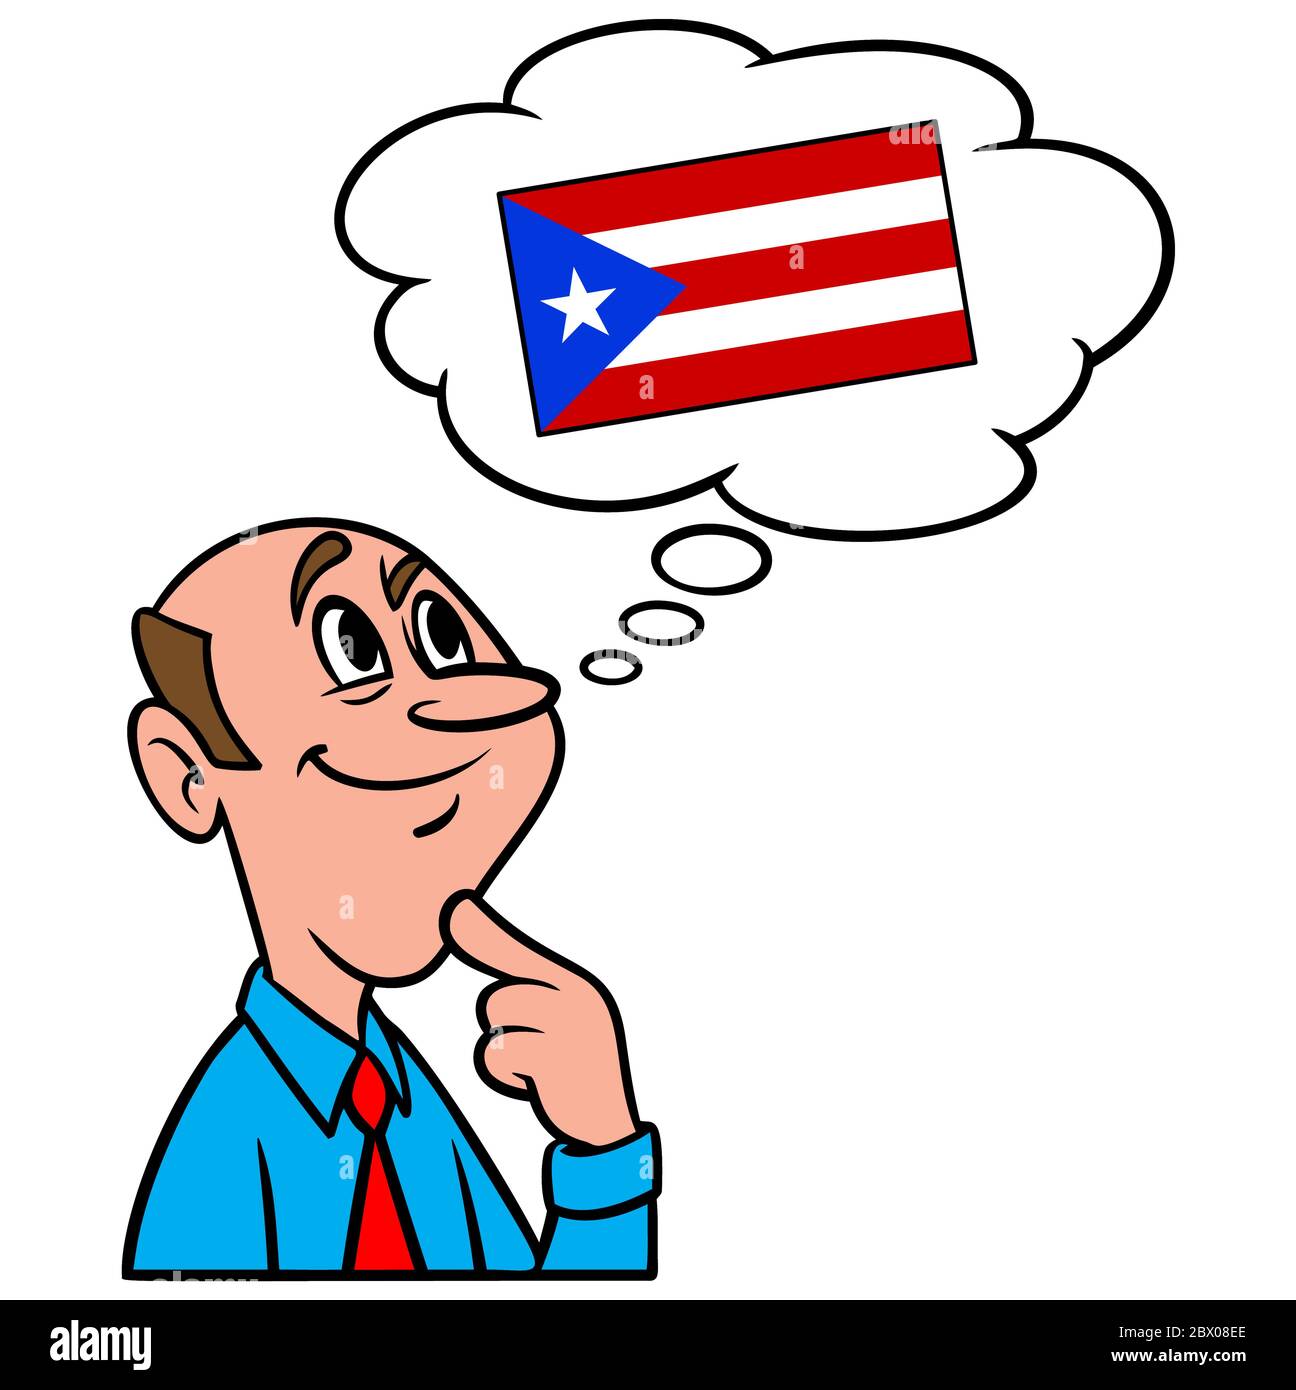 Denken über Puerto Rico - eine Illustration einer Person Denken über Puerto Rico. Stock Vektor